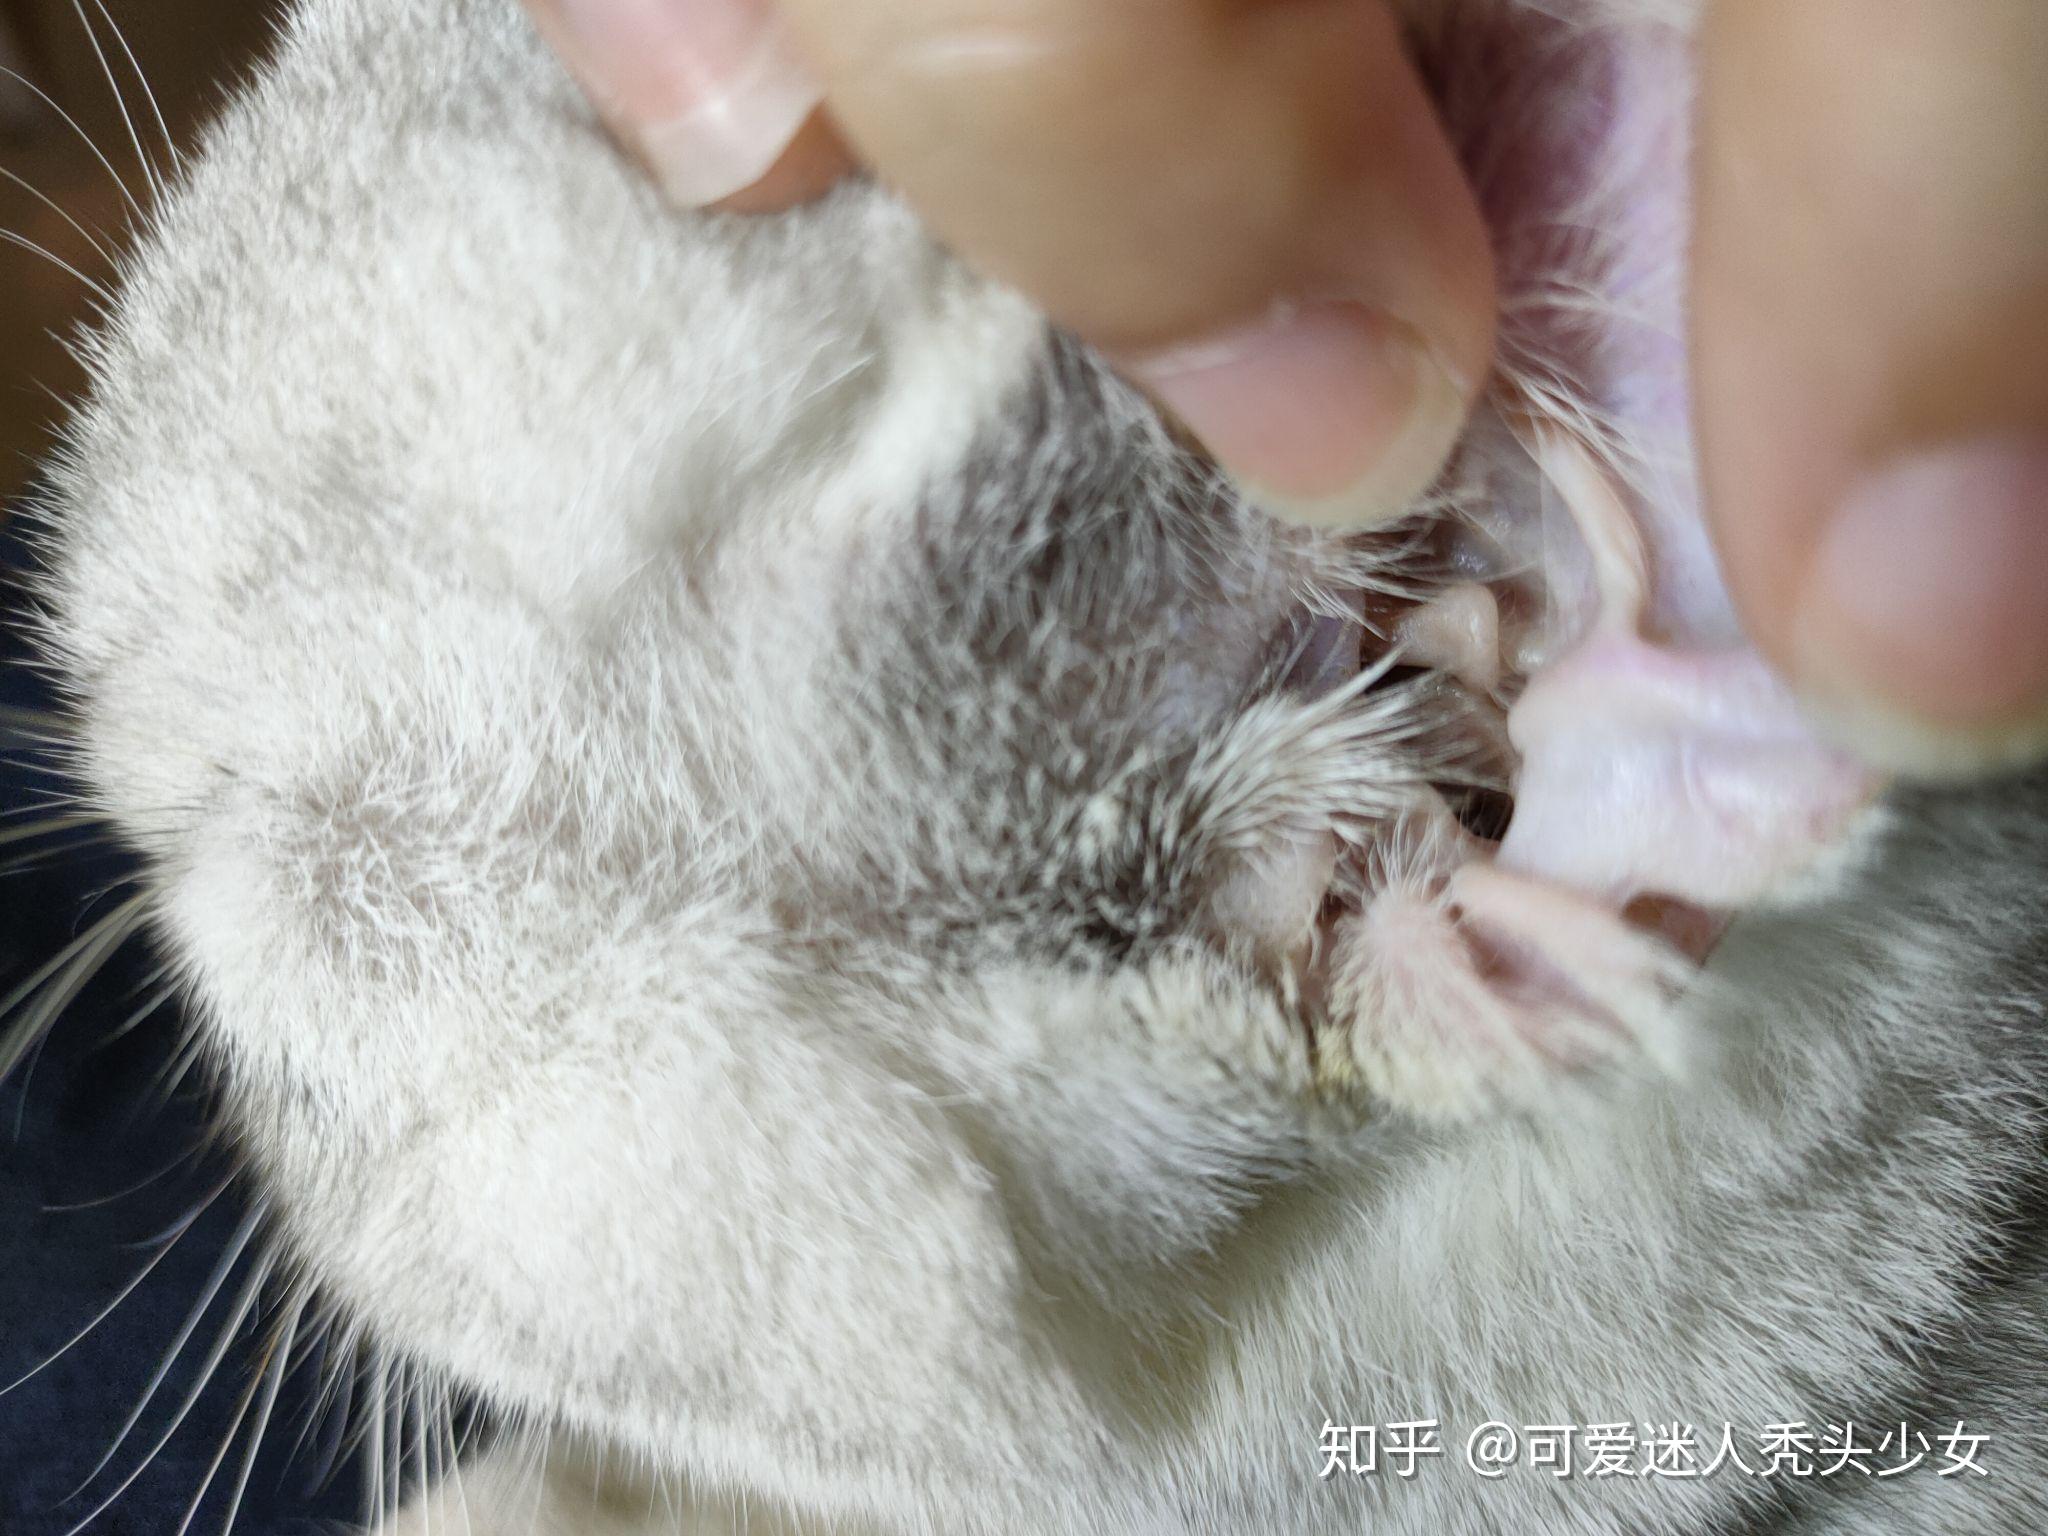 猫的耳朵需要定期清理吗？具体该怎样清洁呢？ - 知乎